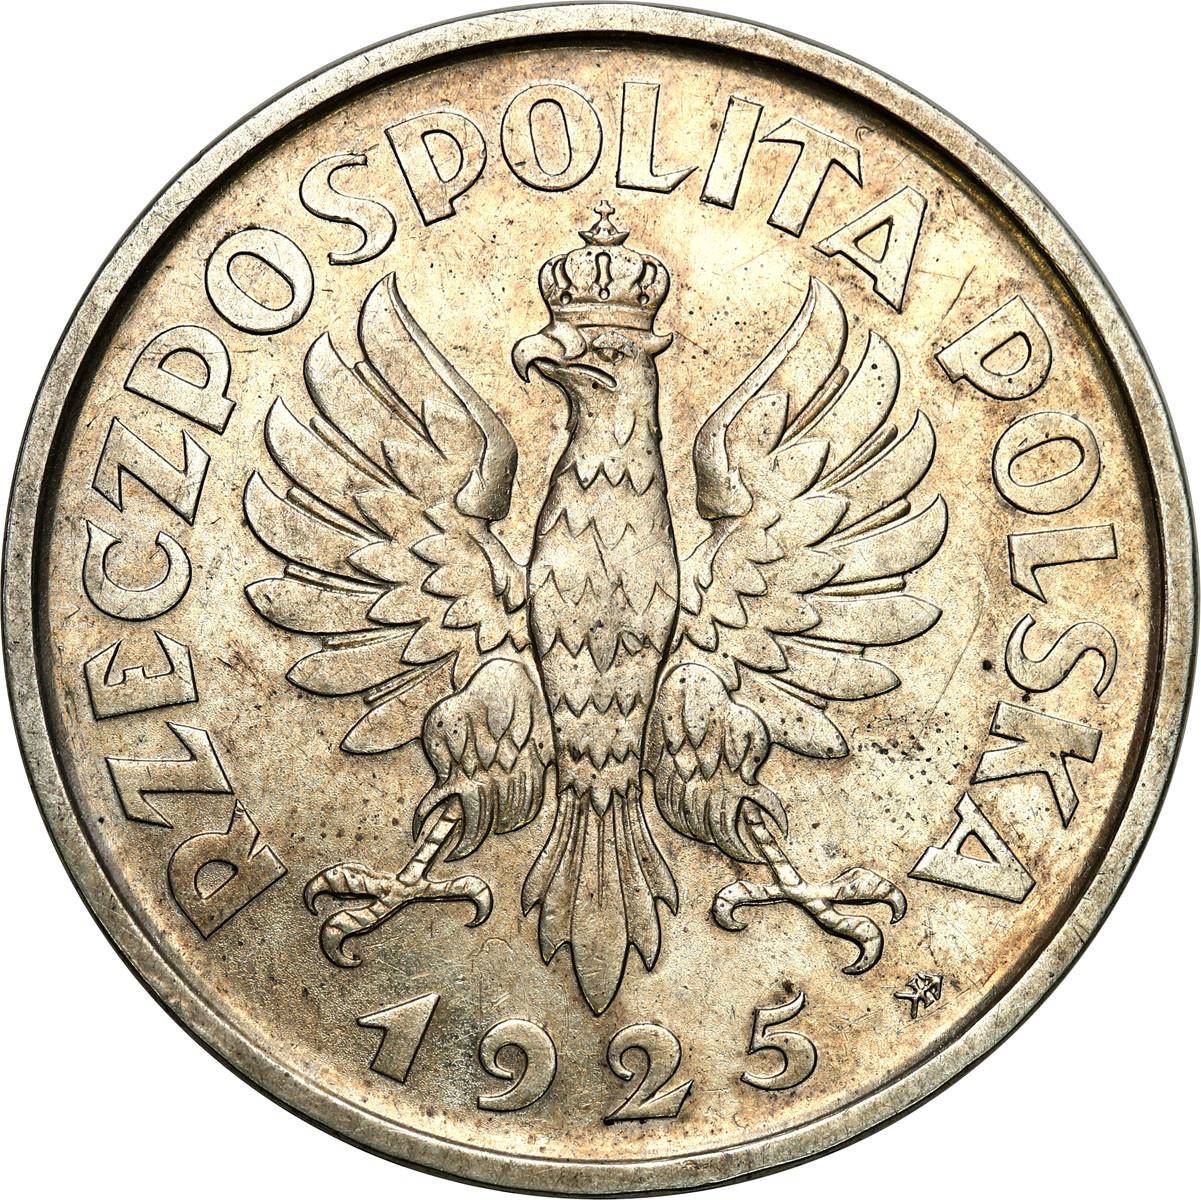 Konstytucja 5 złotych 1925 - 100 perełek - PIĘKNA i RZADKA